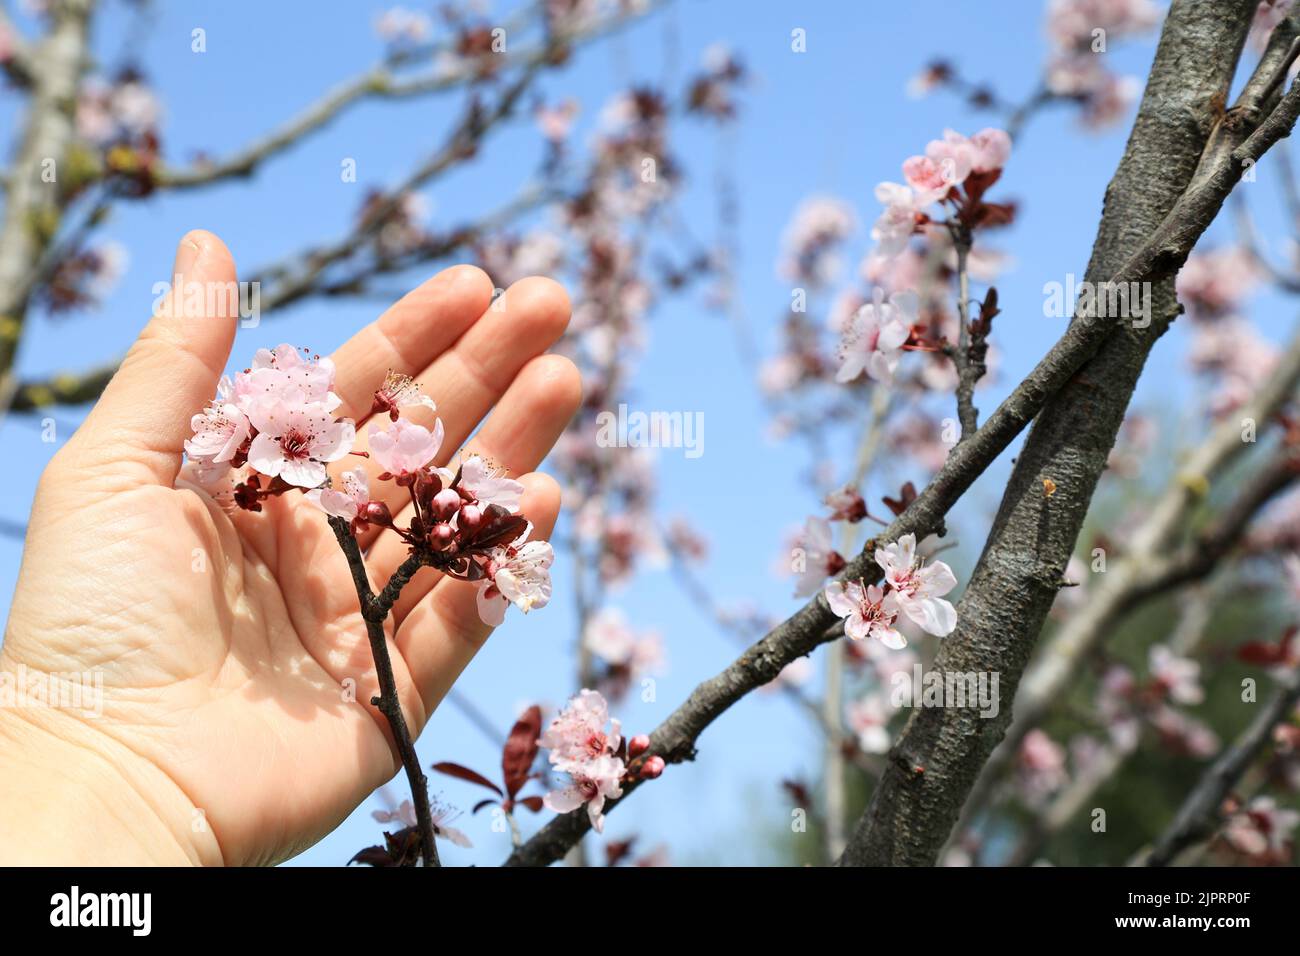 La main d'une femme mûre tient une fleur de cerisier. Cerisier en fleur Prunus cerasifera Pissardii avec un accent sélectif sur le ciel bleu Banque D'Images